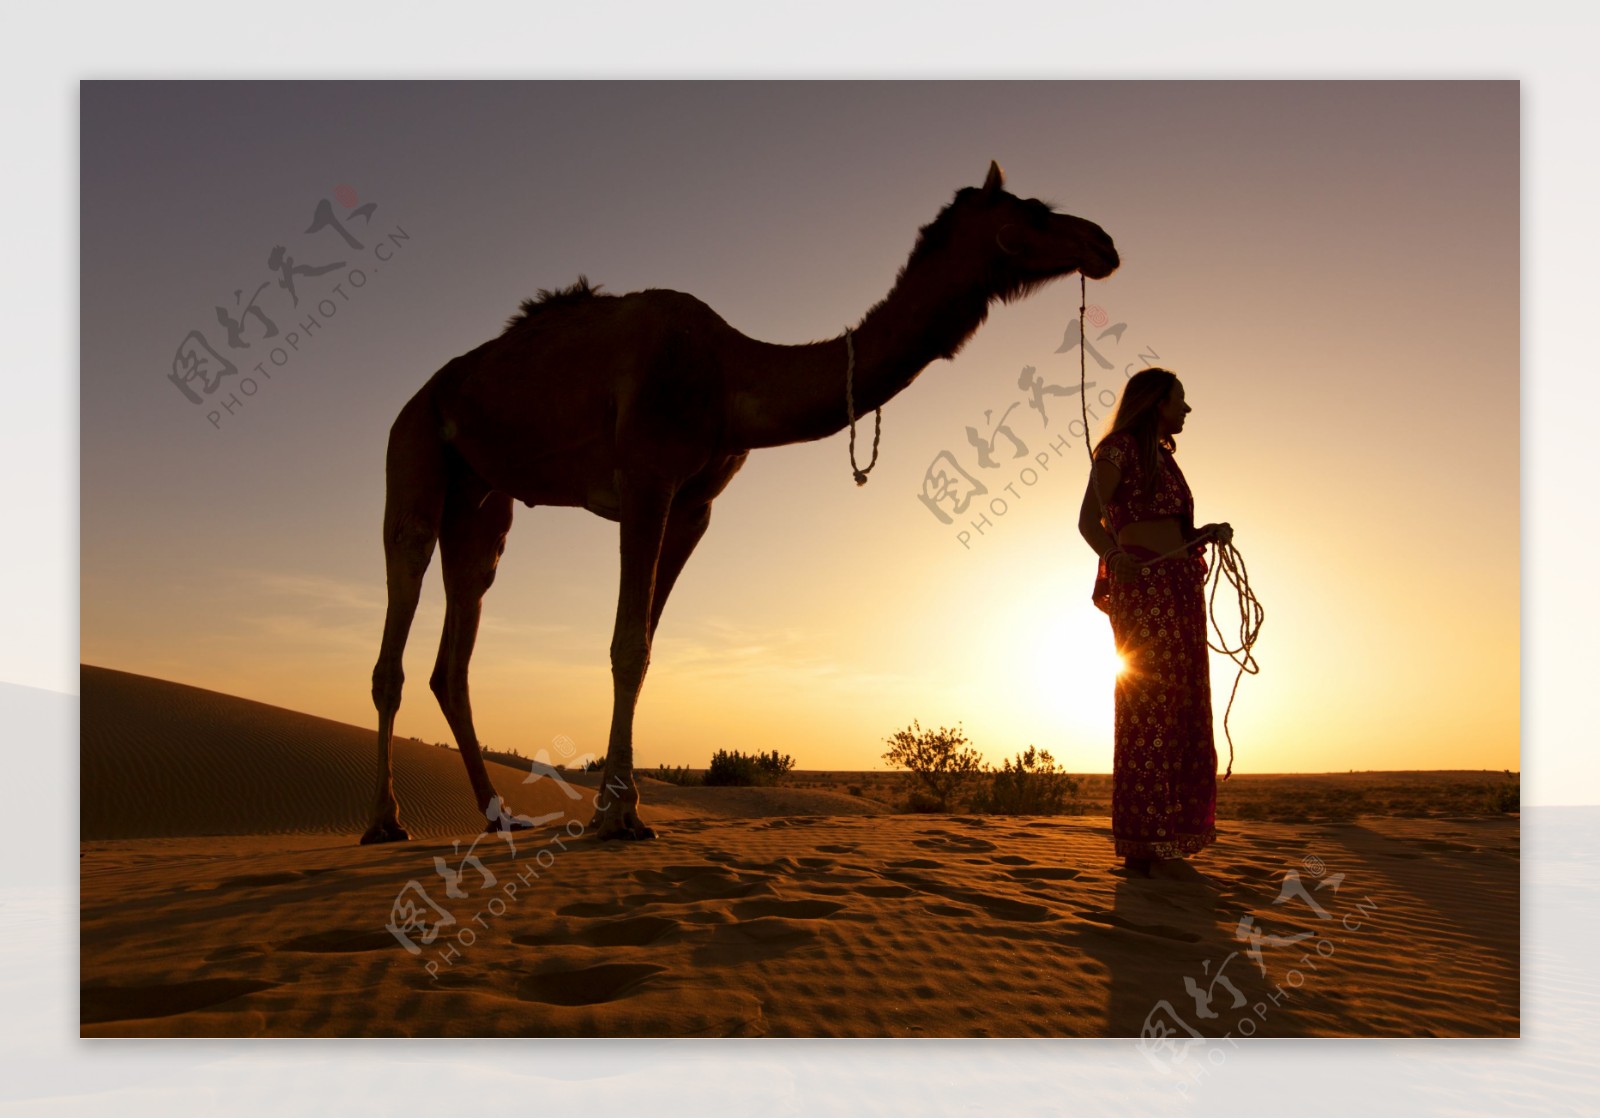 荒漠骆驼人物行走